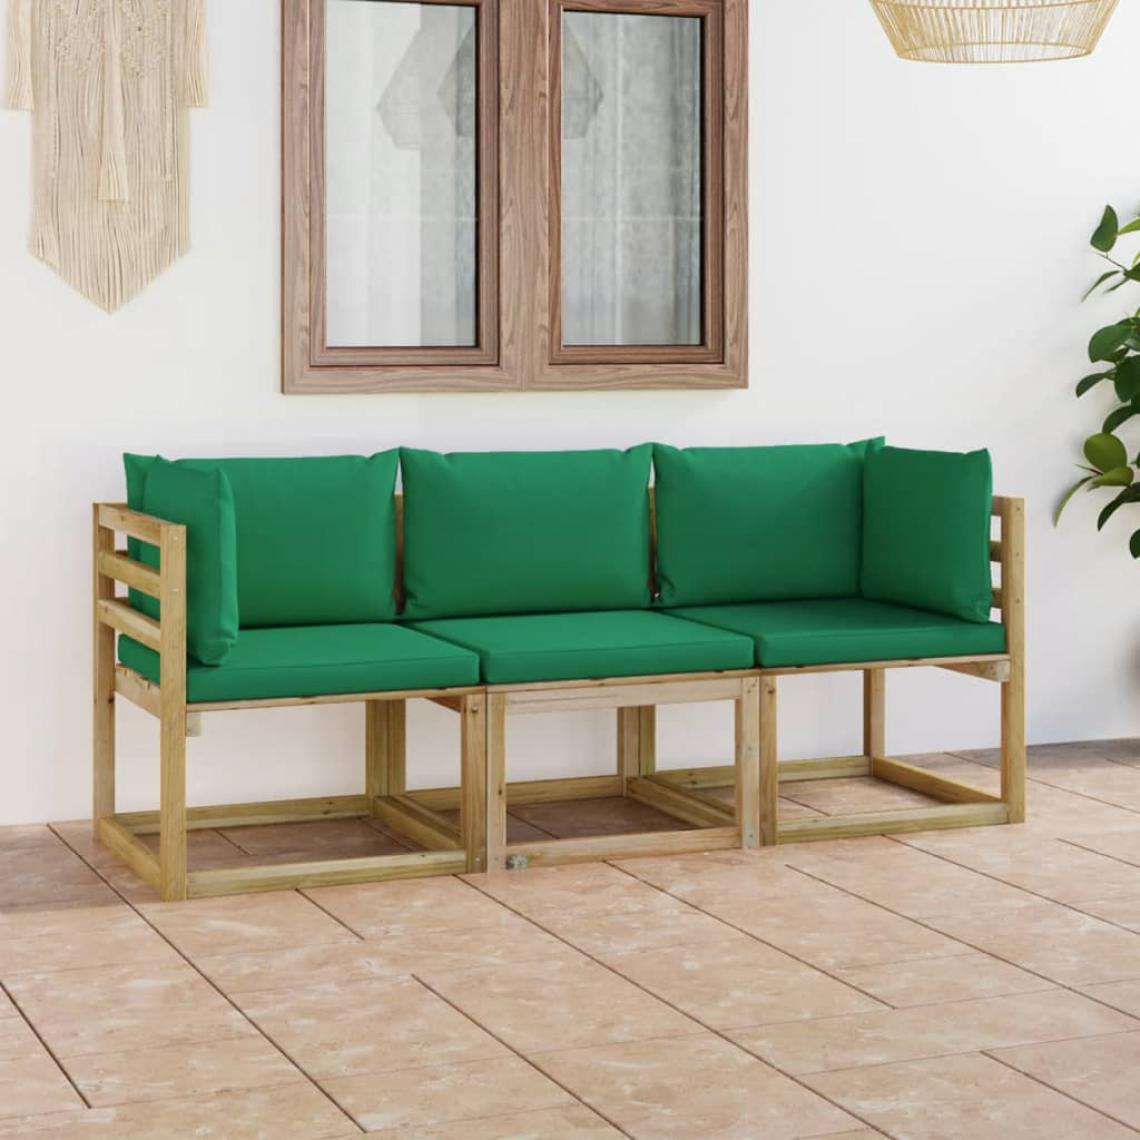 Chunhelife - Canapé de jardin 3 places avec coussins vert - Ensembles canapés et fauteuils